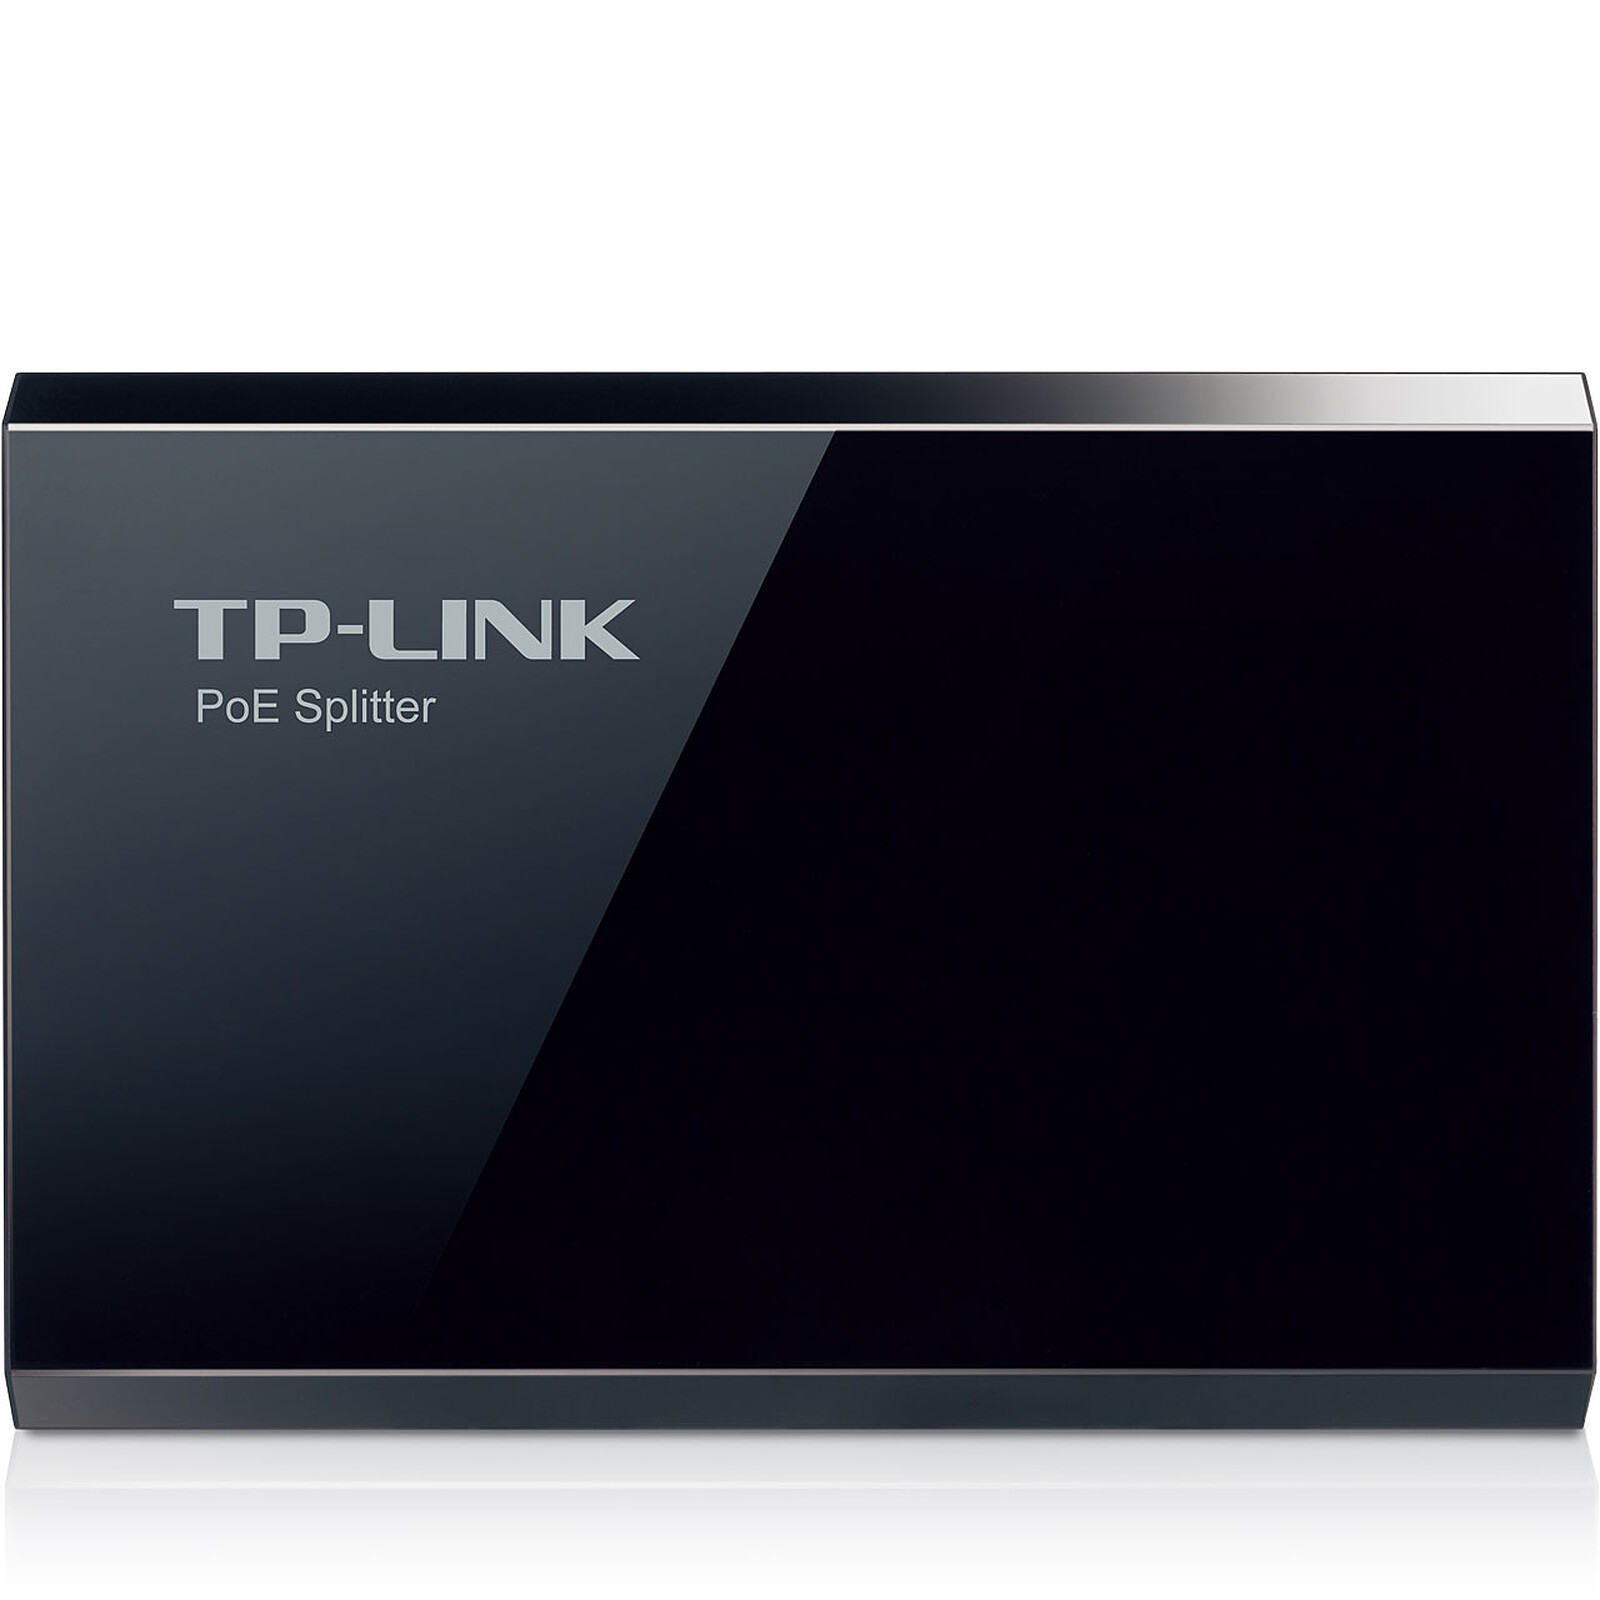 TP-LINK MC220L - Accessoires switch - Garantie 3 ans LDLC